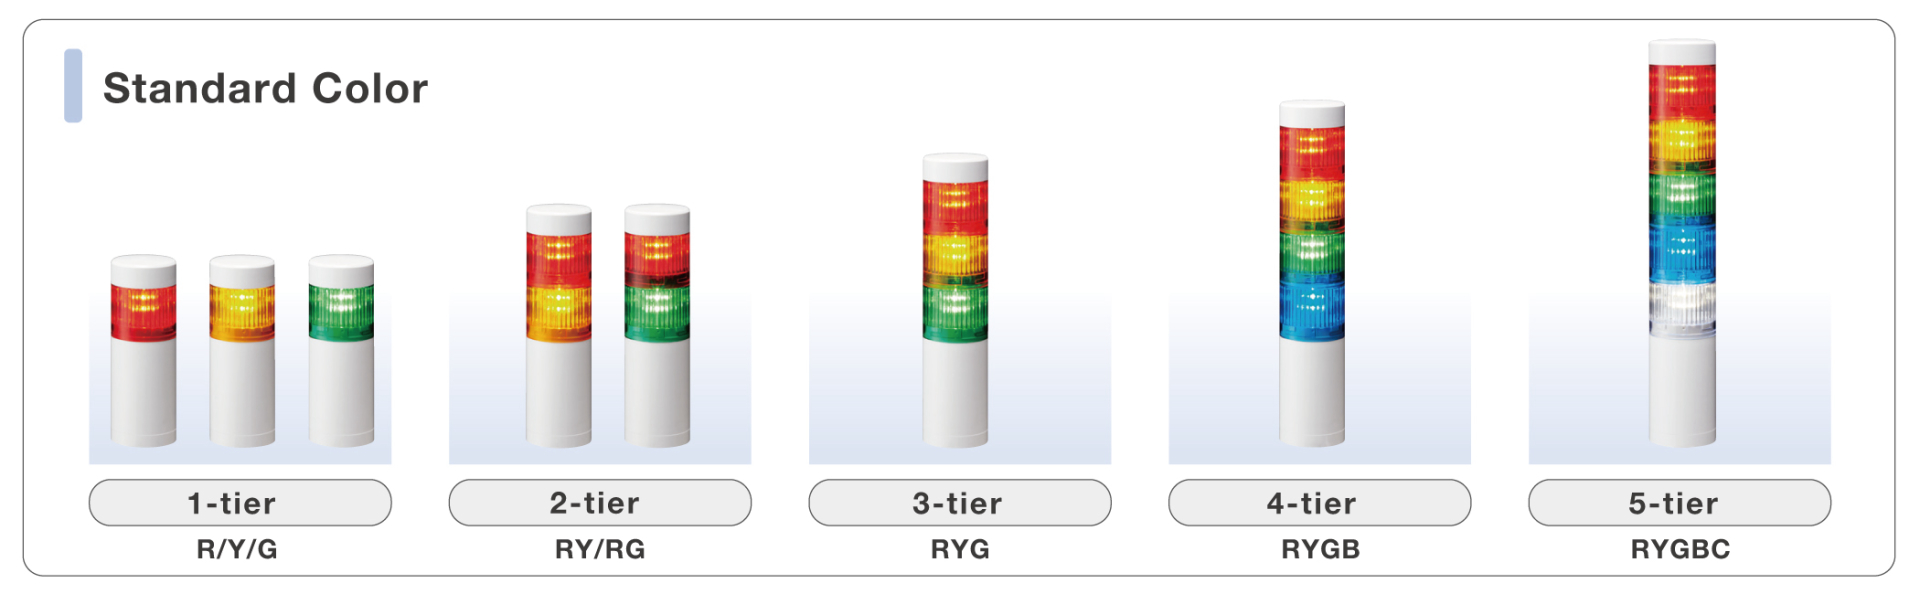 LR10-2M2WJNW-RY / RG Đèn tháp tín hiệu PATLITE 2 tầng Bóng LED Cấp độ bảo vệ IP66/69K